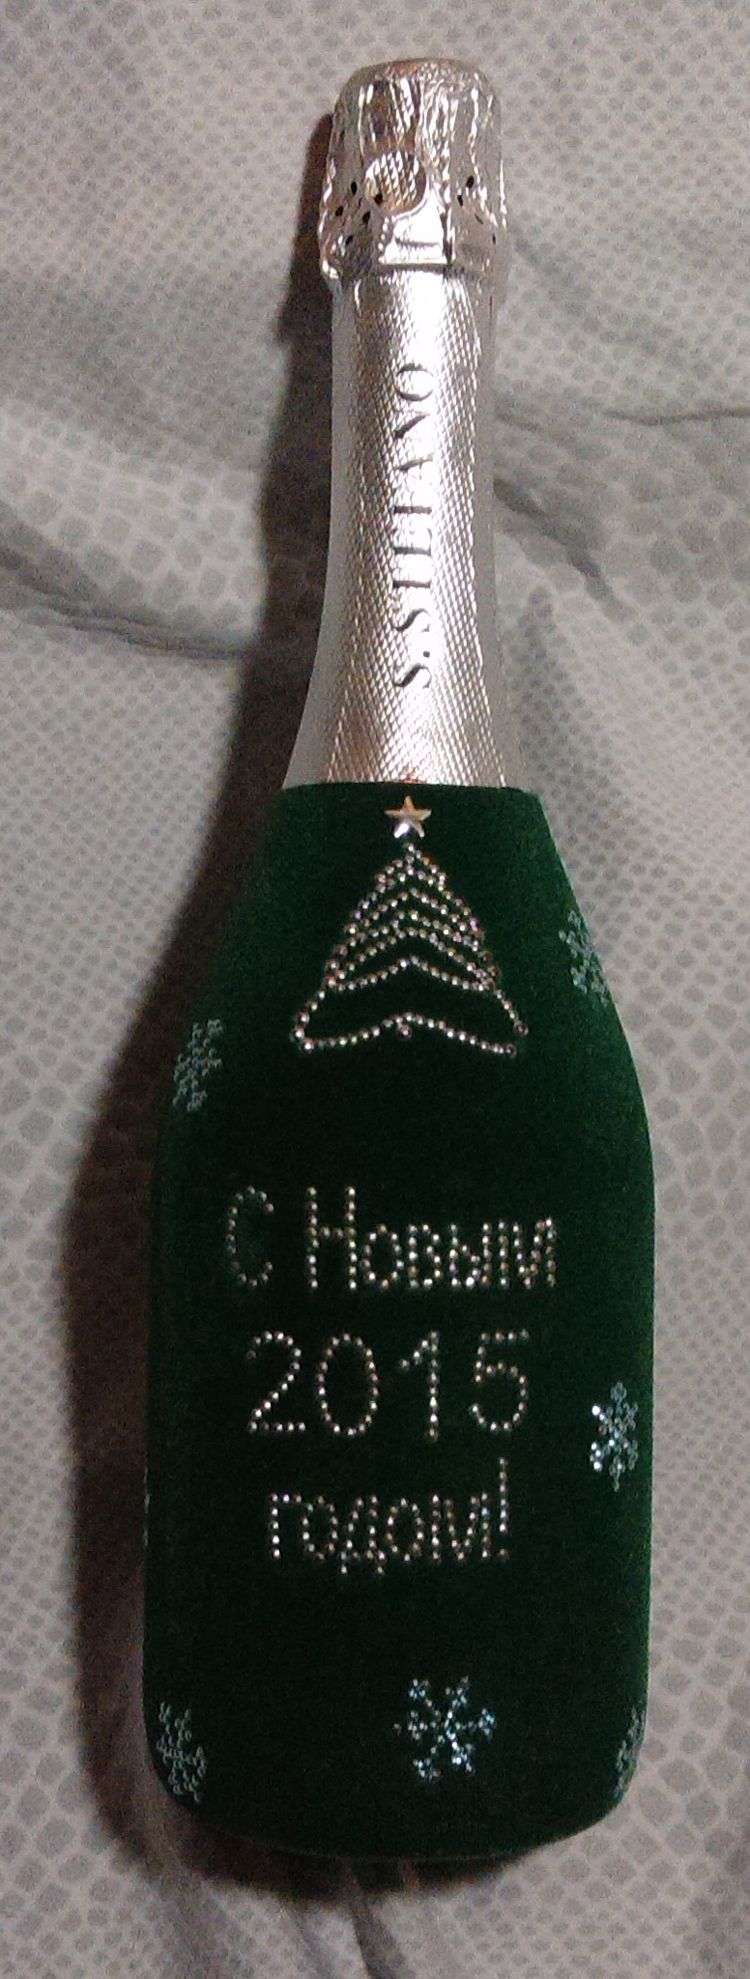 Флокированная бутылка шампанского к Новому году.